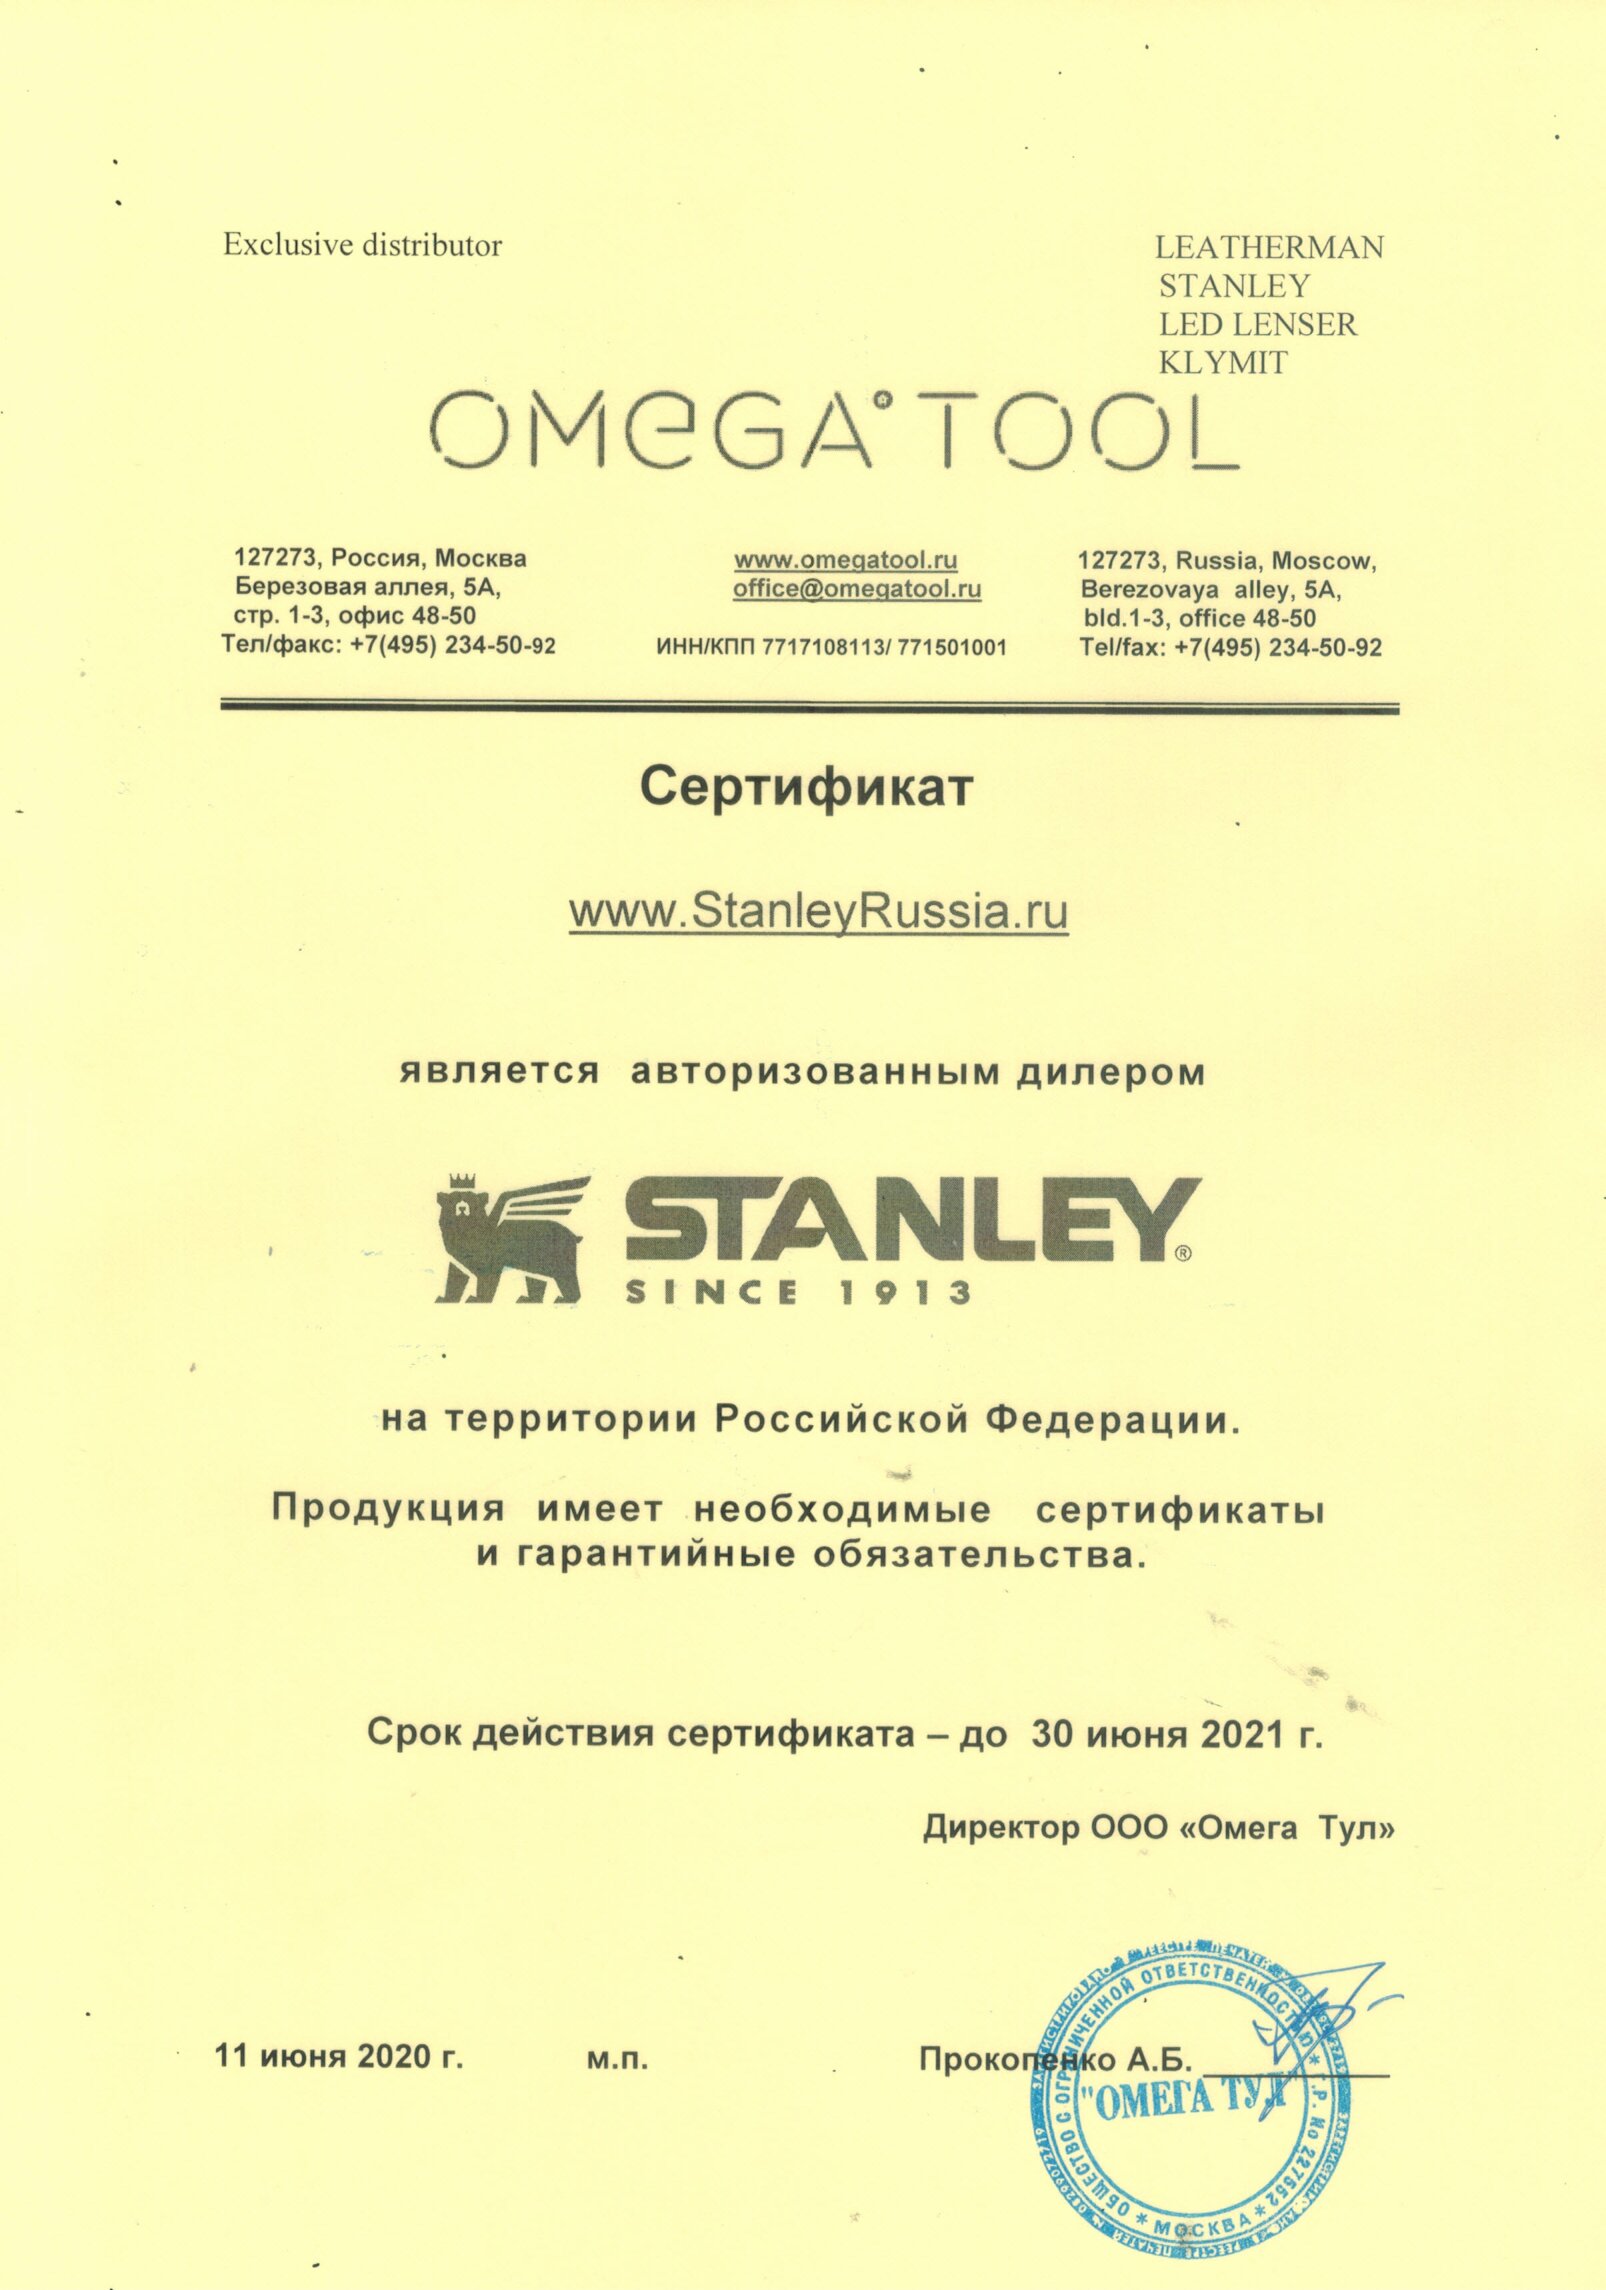 картинка Темно-зеленый термос STANLEY Classic 1,9L 10-07934-003 от магазина Без Проблем